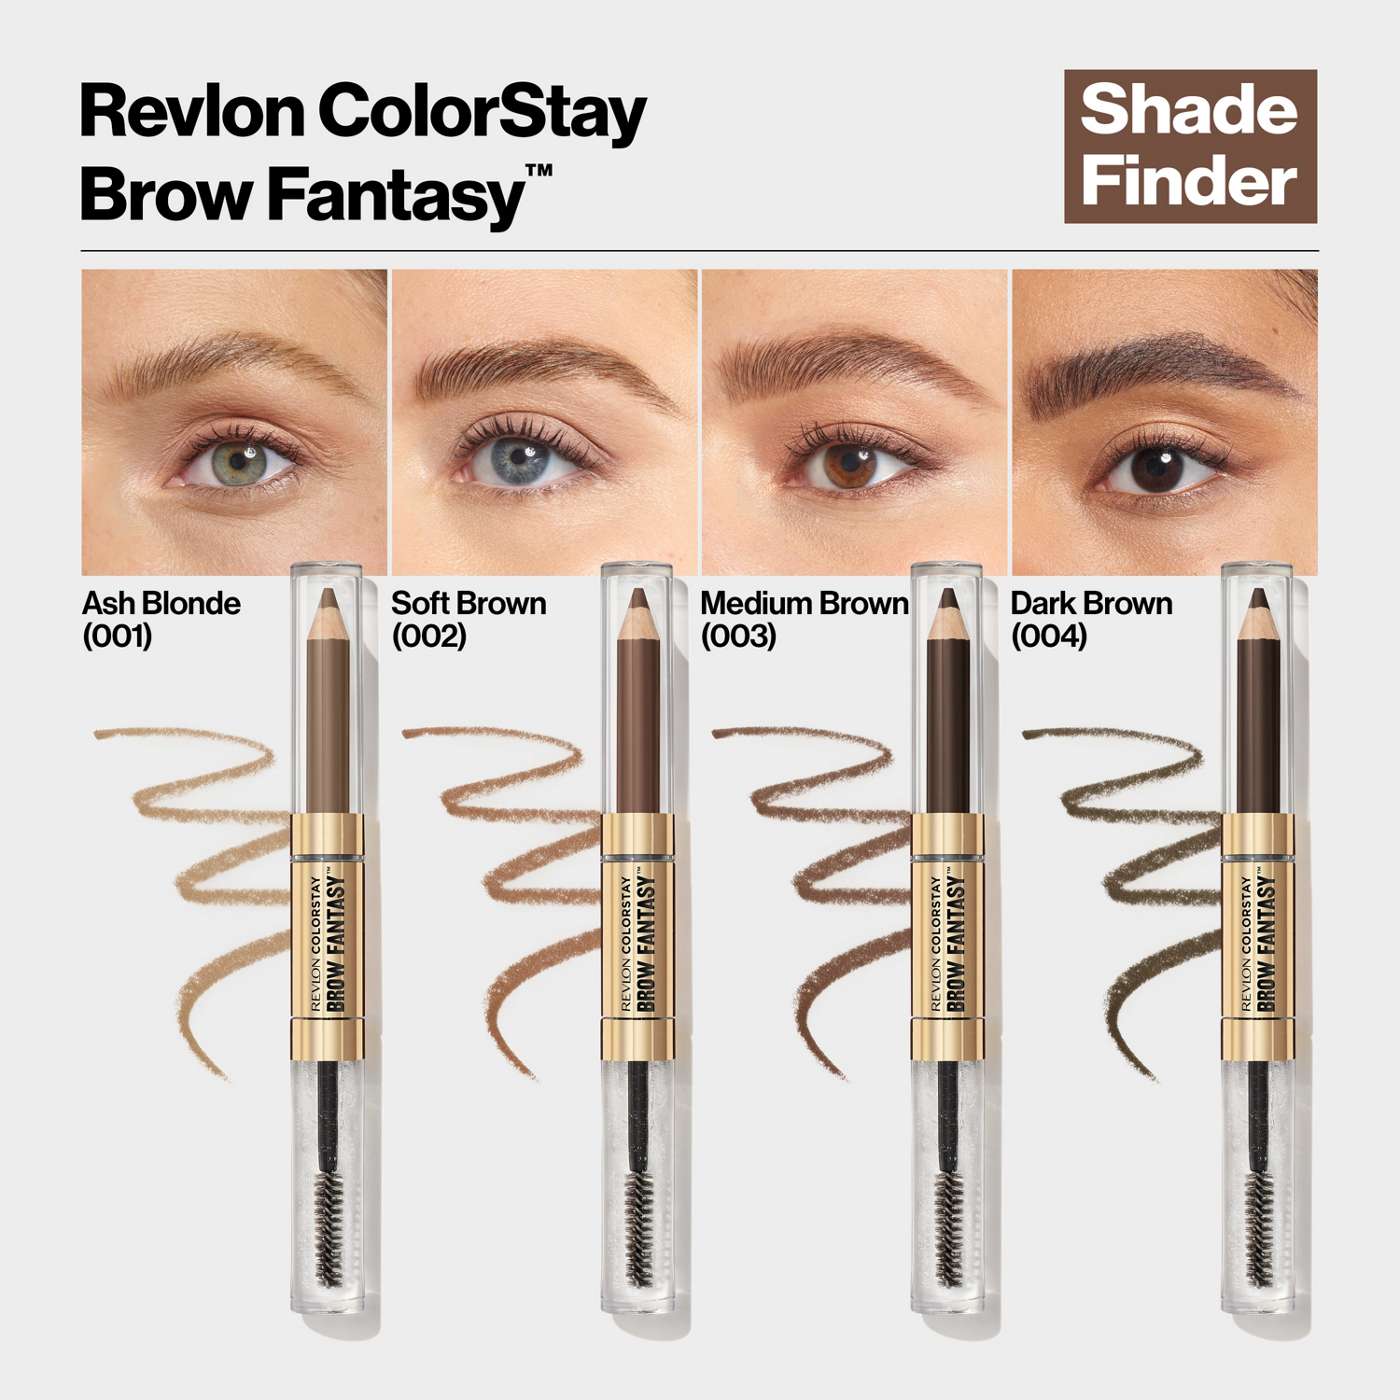 Revlon ColorStay Brow Fantasy Pencil & Gel - Dark Brown; image 3 of 3